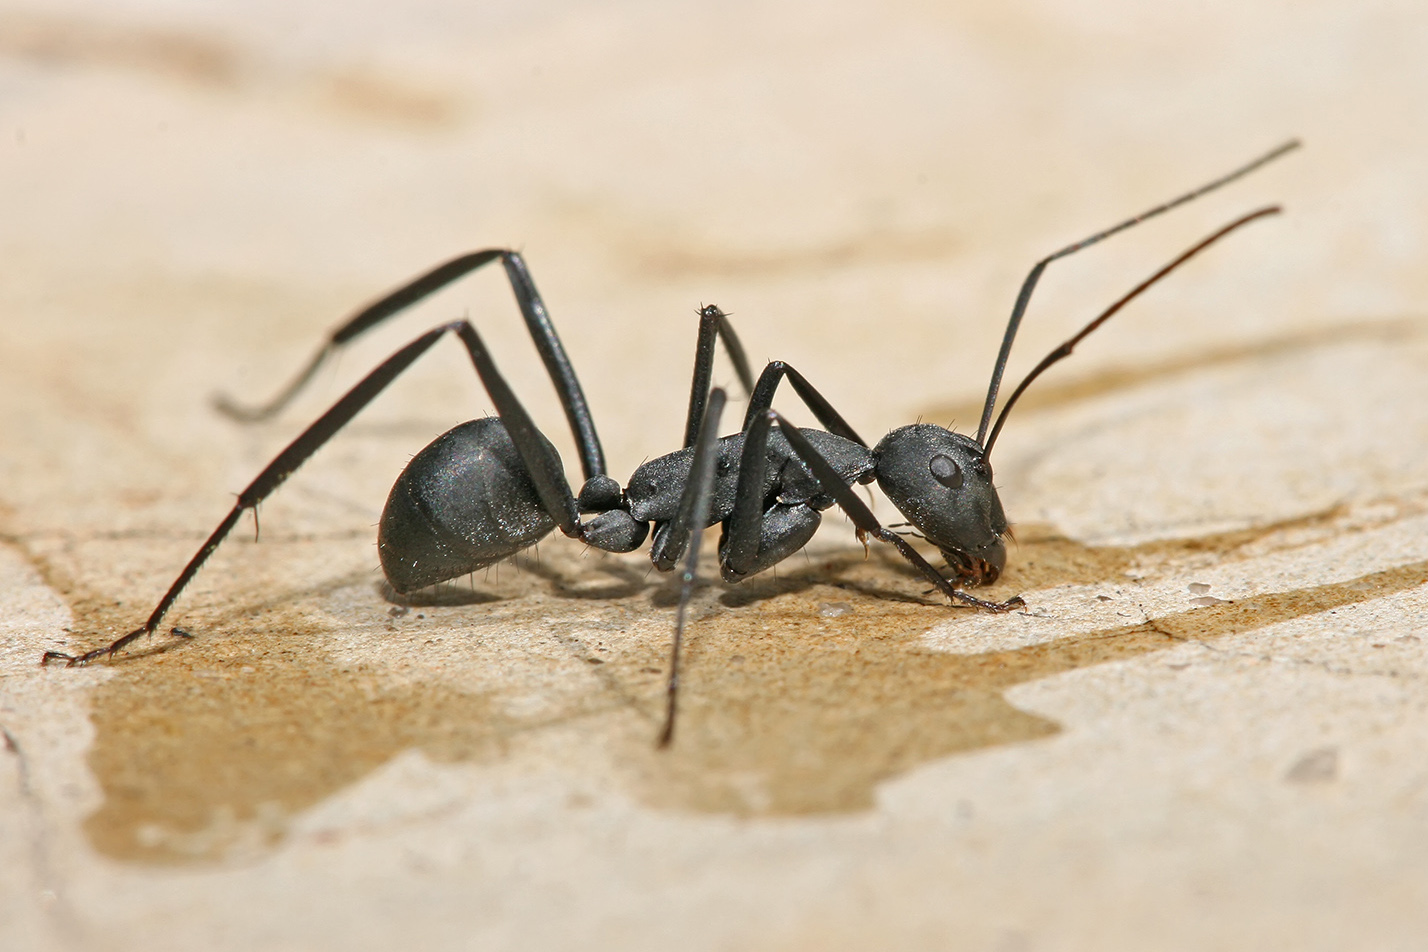 Camponotus spp